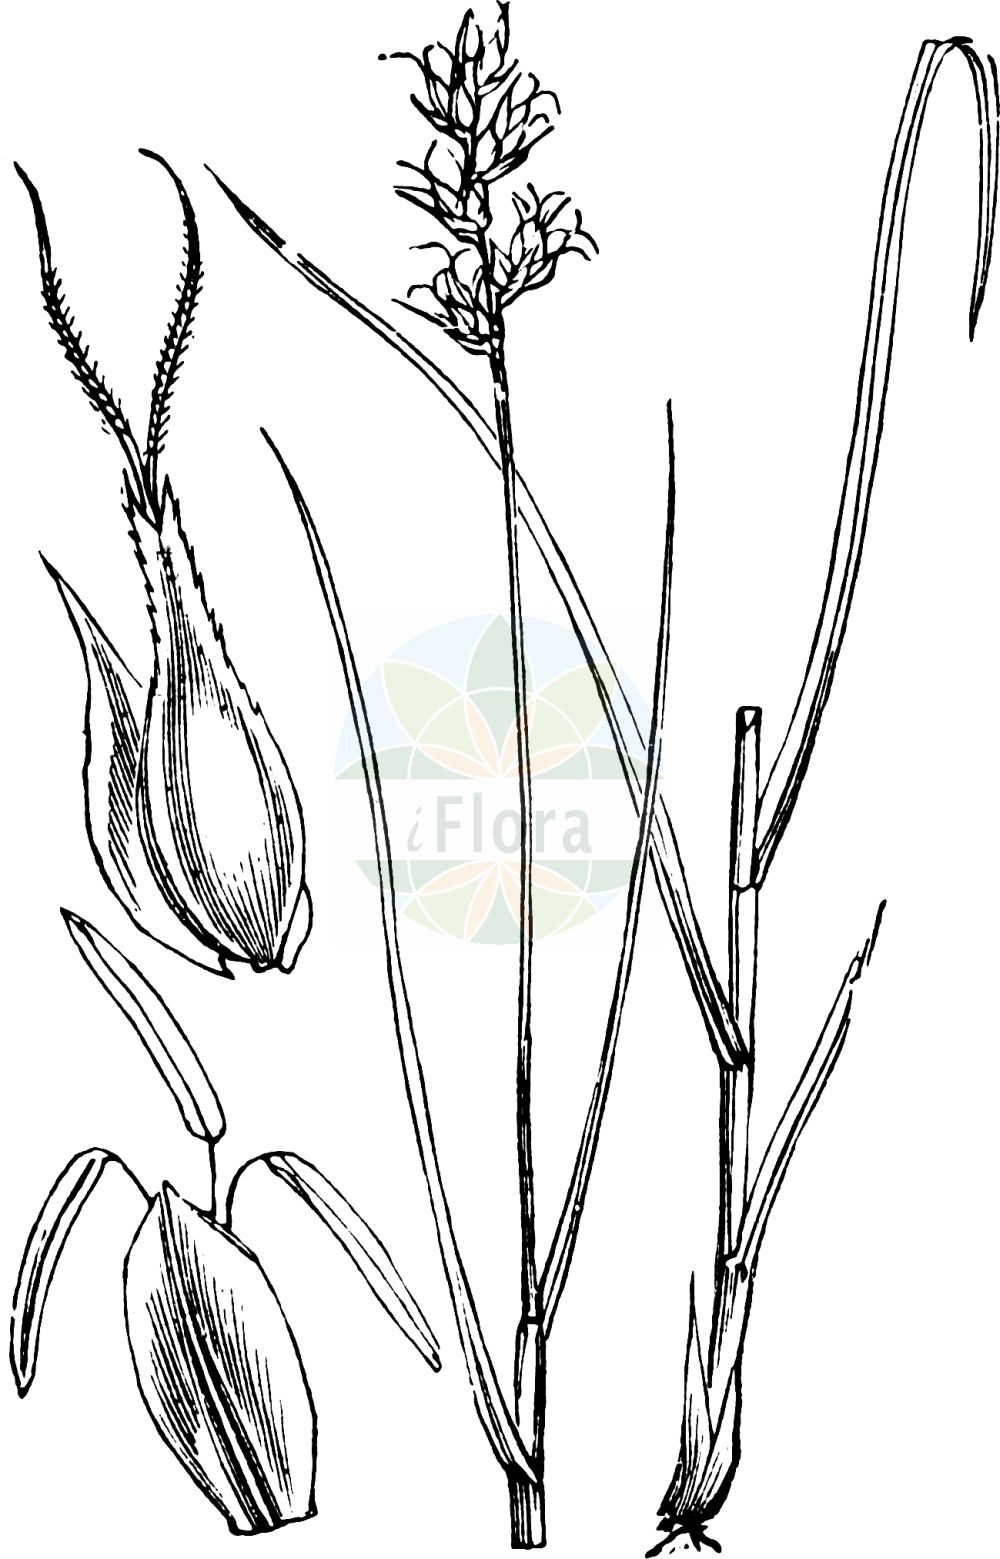 Historische Abbildung von Carex muricata (Sparrige Segge - Large-fruited Prickly-Sedge). Das Bild zeigt Blatt, Bluete, Frucht und Same. ---- Historical Drawing of Carex muricata (Sparrige Segge - Large-fruited Prickly-Sedge). The image is showing leaf, flower, fruit and seed.(Carex muricata,Sparrige Segge,Large-fruited Prickly-Sedge,Carex muricata,Vignea muricata,Sparrige Segge,Large-fruited Prickly-Sedge,Spiked Sedge,Carex,Segge,Sedge,Cyperaceae,Sauergräser,Sedge family,Blatt,Bluete,Frucht,Same,leaf,flower,fruit,seed,Fitch et al. (1880))